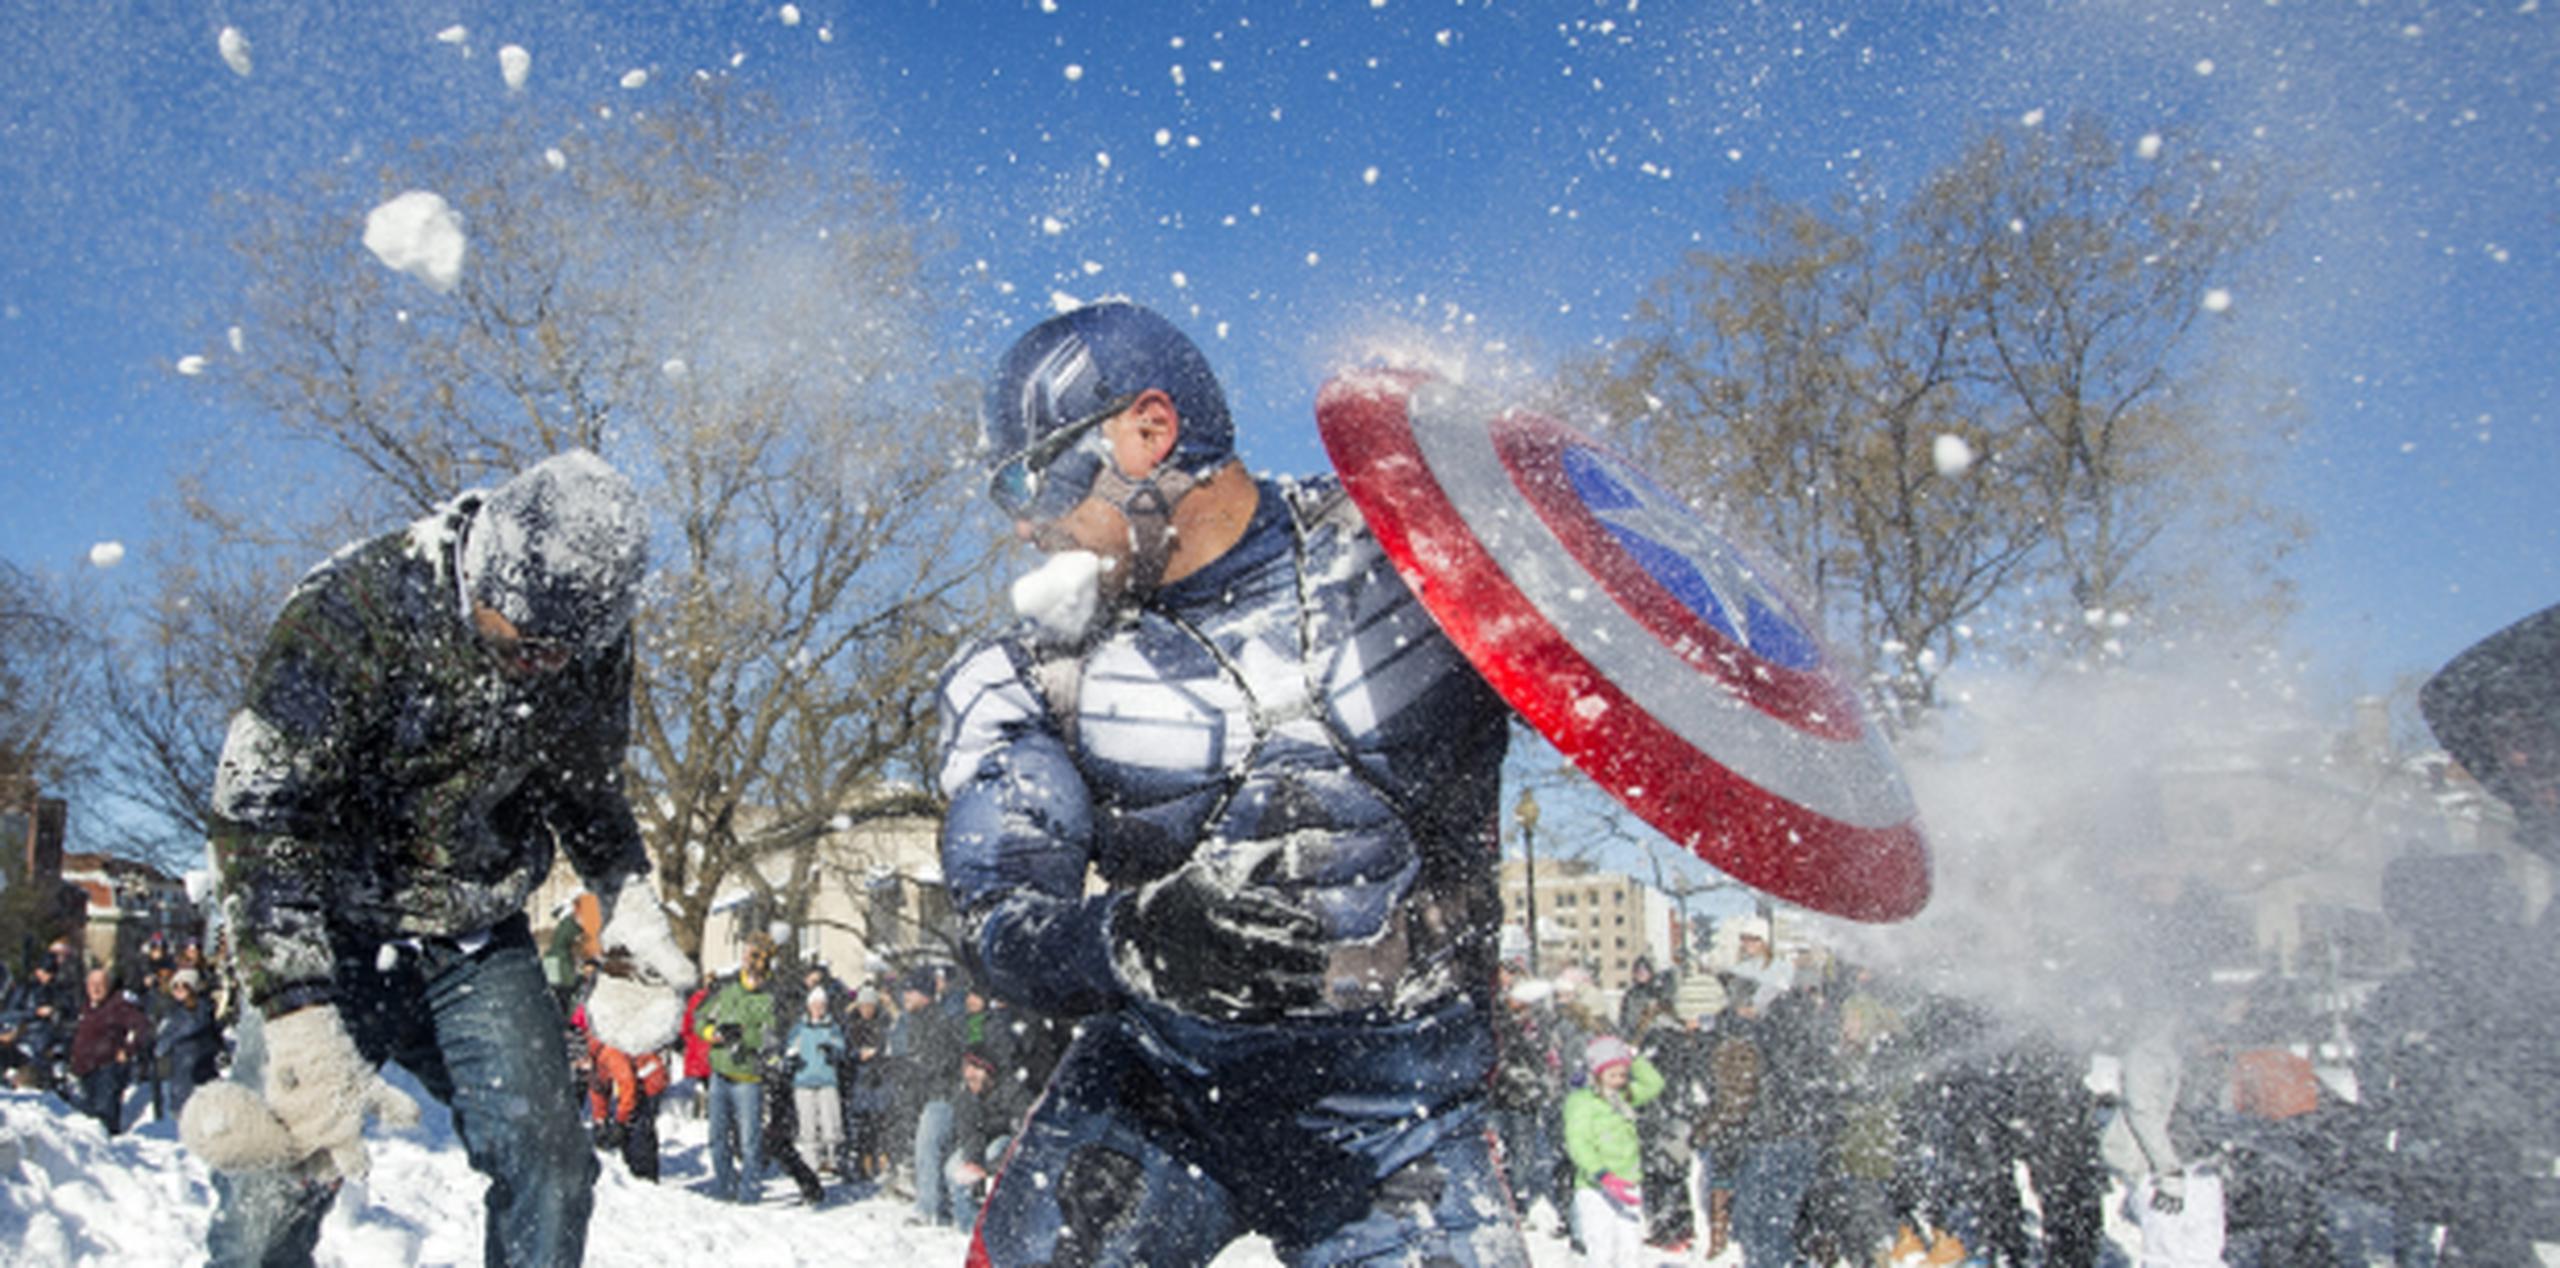 Este hombre disfrazado de Capitán América en Washington participaba ayer de una guerra con bolas de nieve luego de la masiva tormenta que afectó la costa este. (EFE)